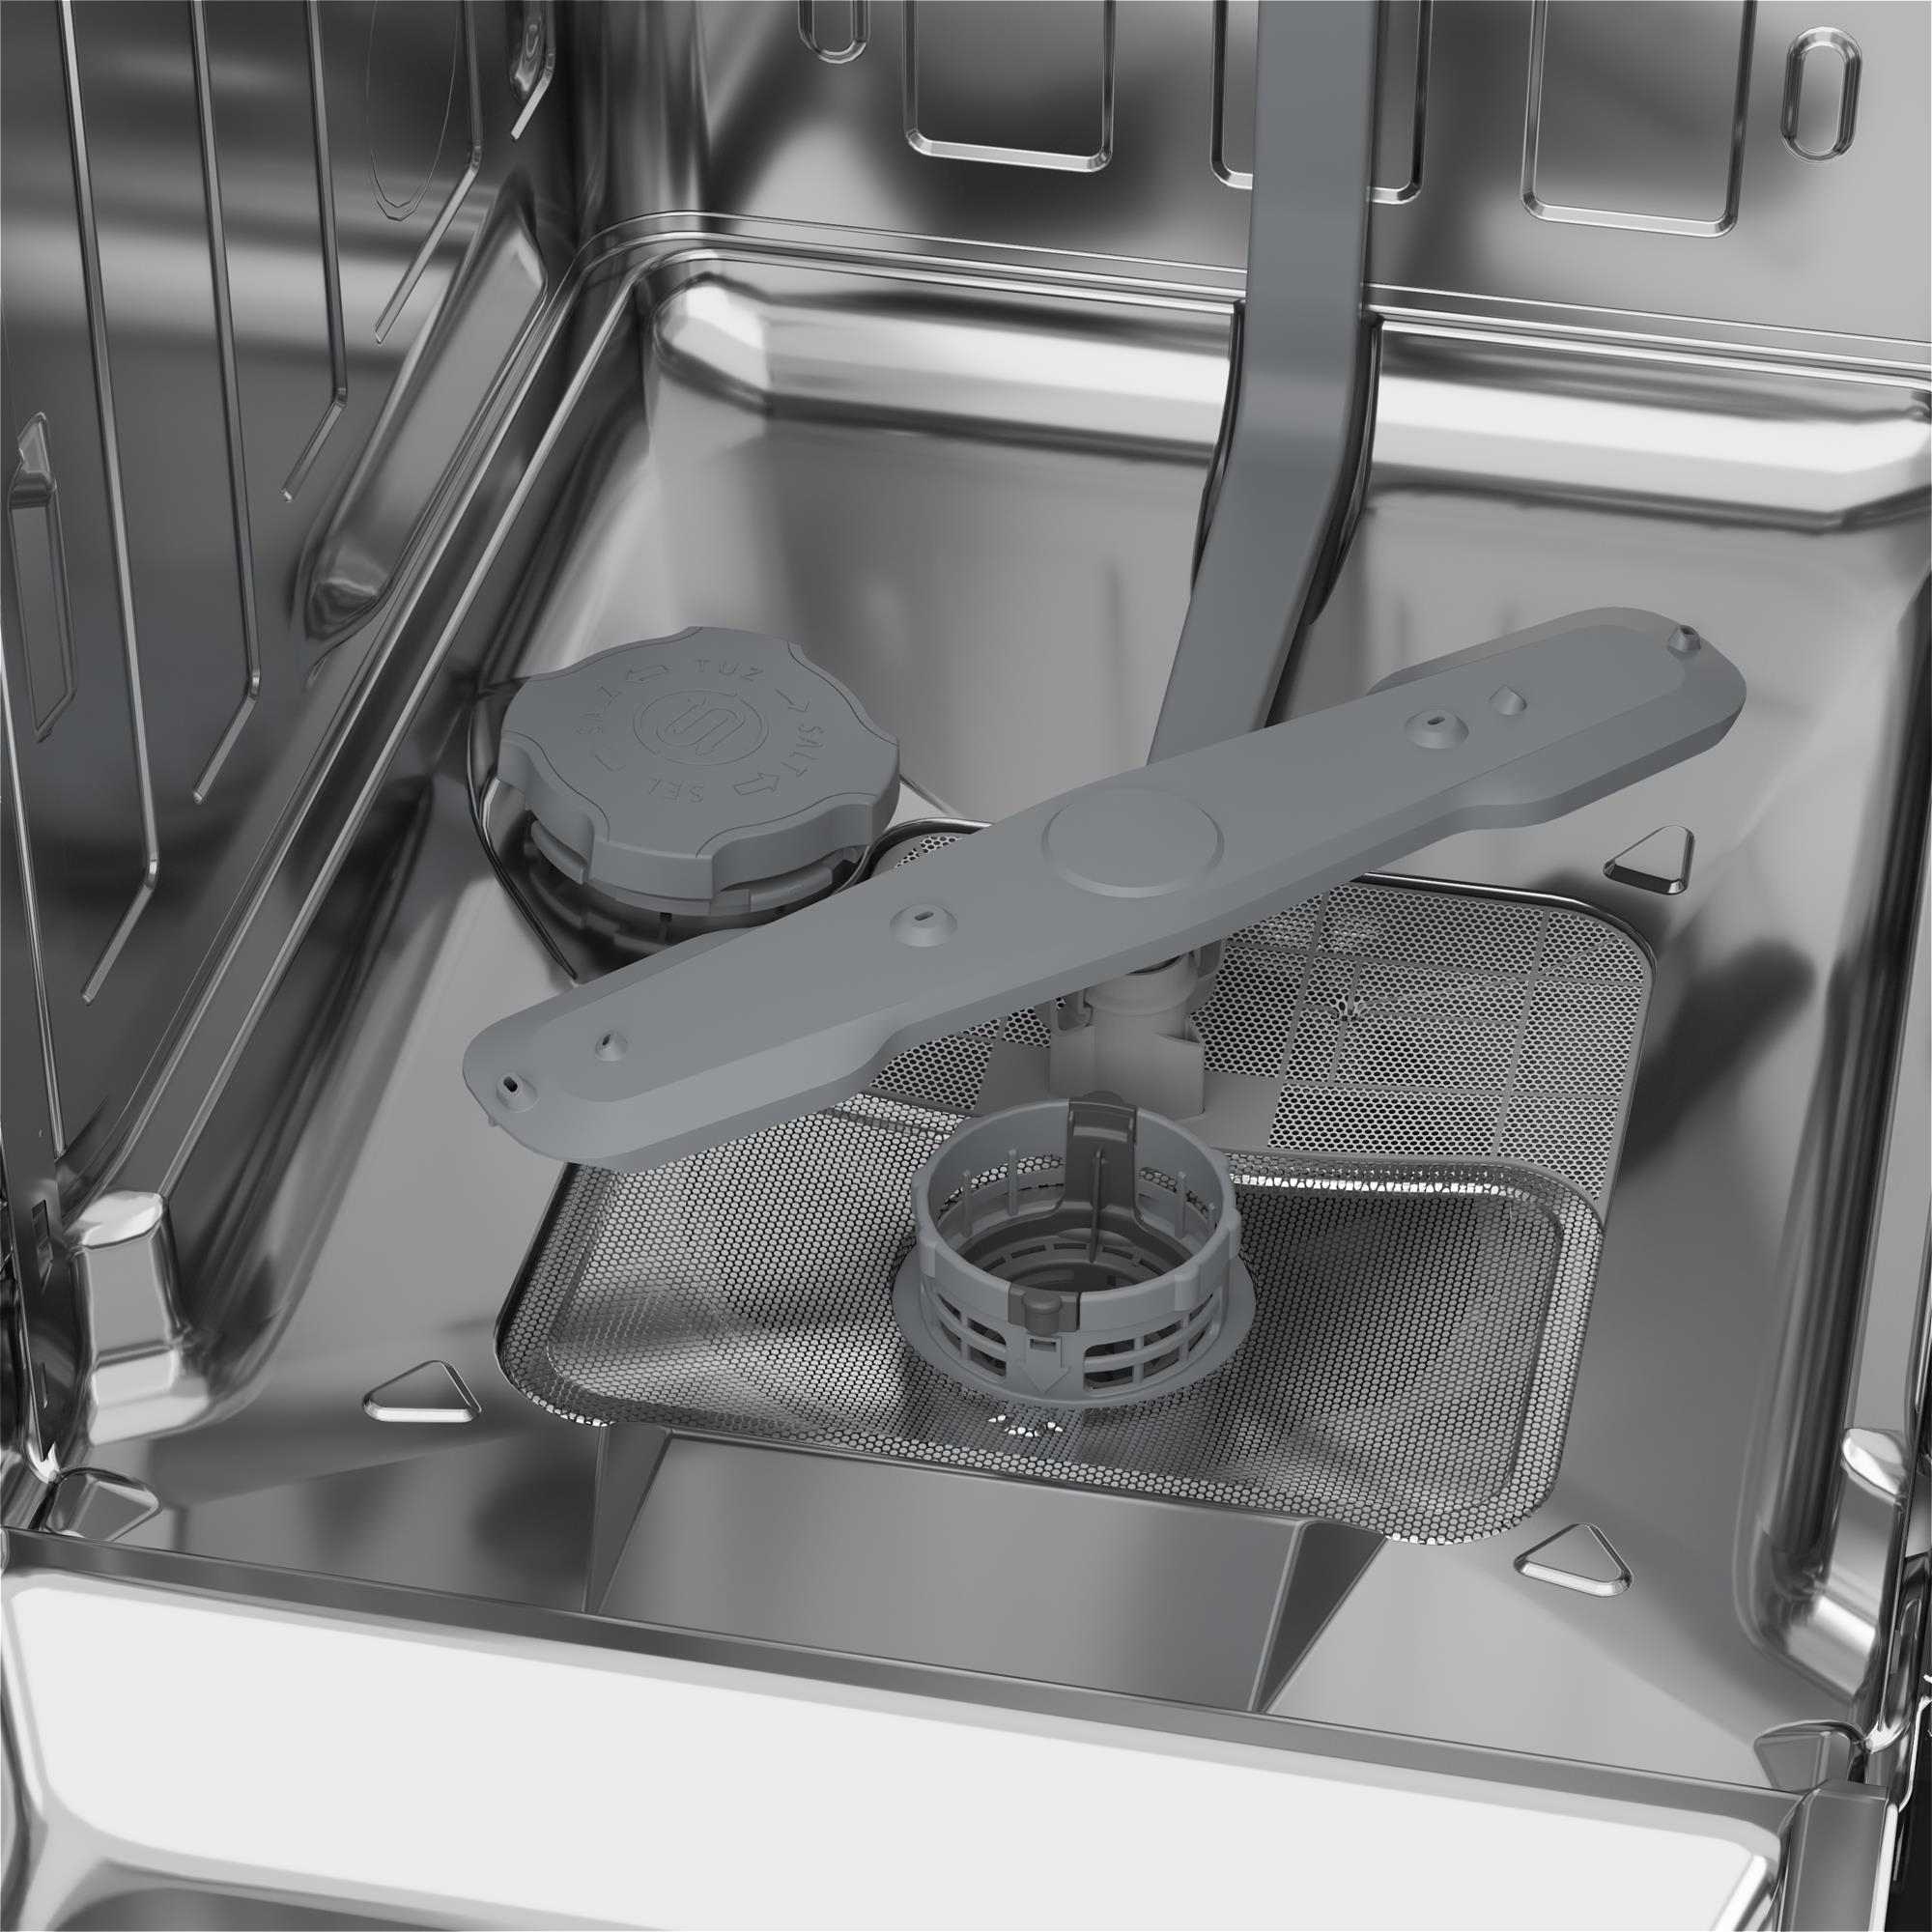 Посудомоечная машина Beko BDIS36020 отзывы - изображения 5